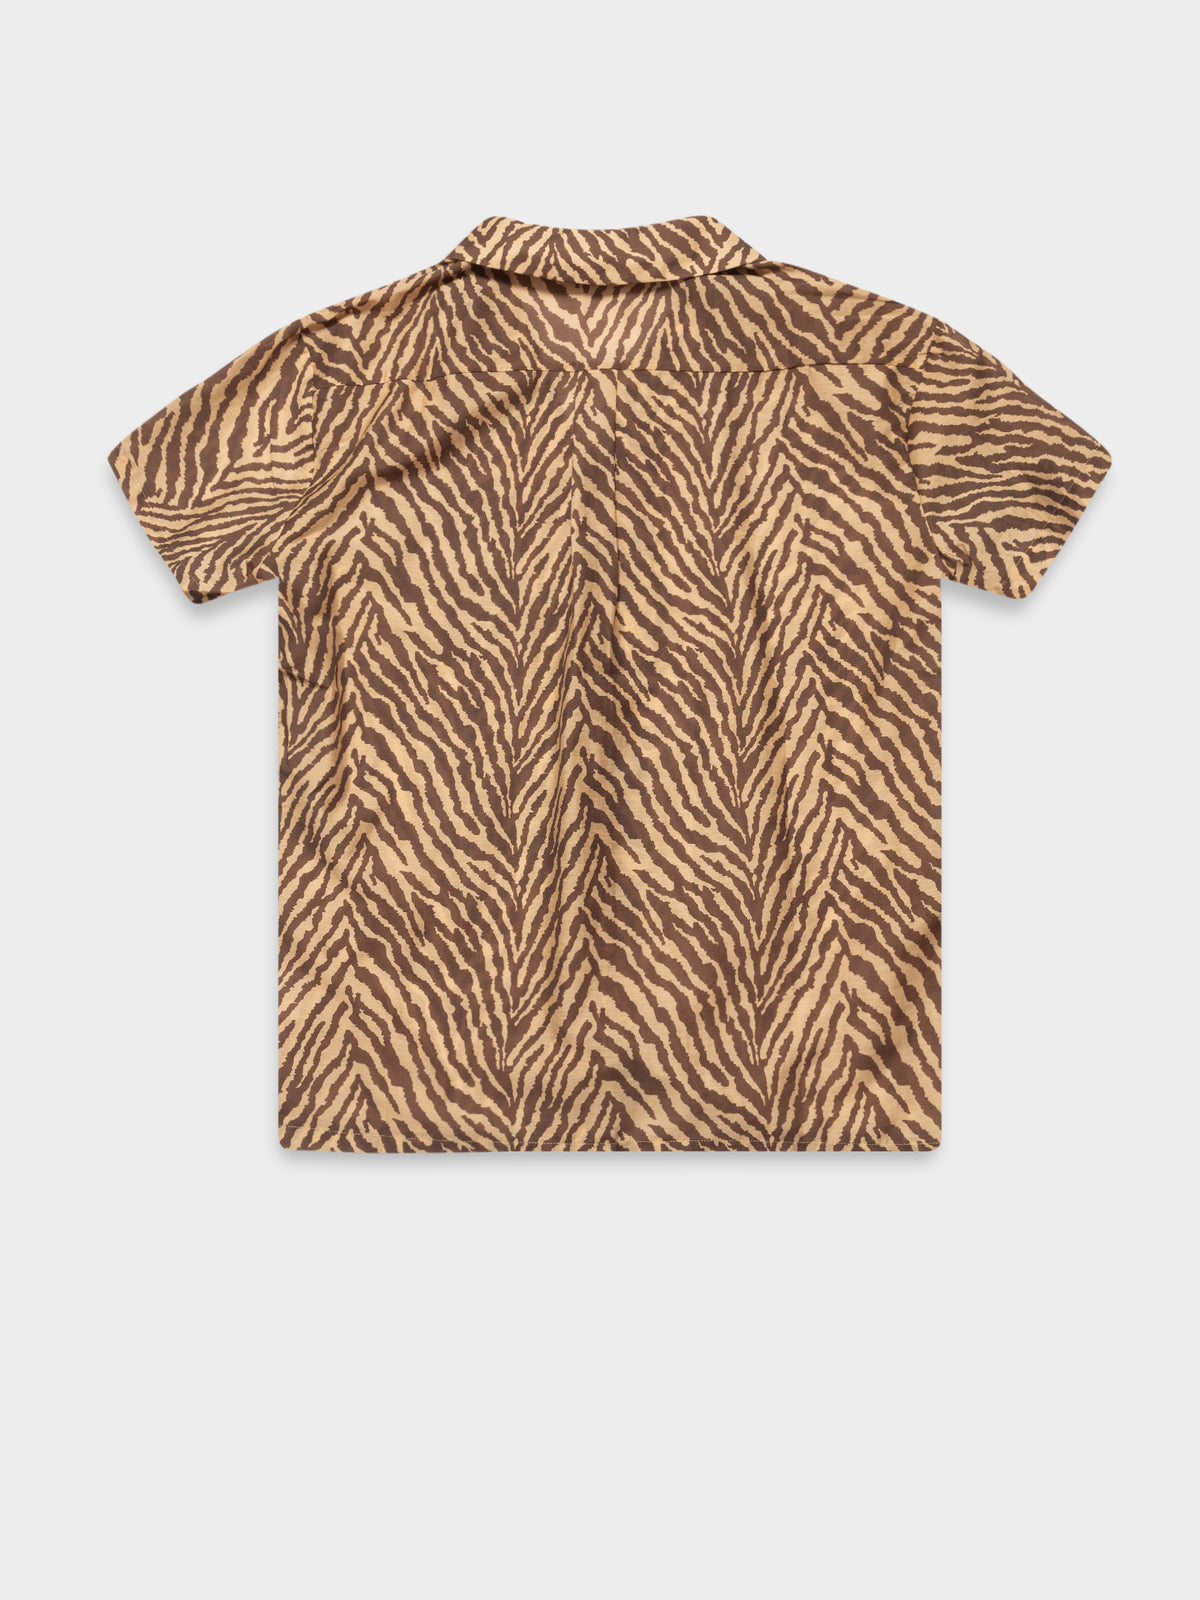 Indie Shirt in Brown &amp; Tan Zebra Print